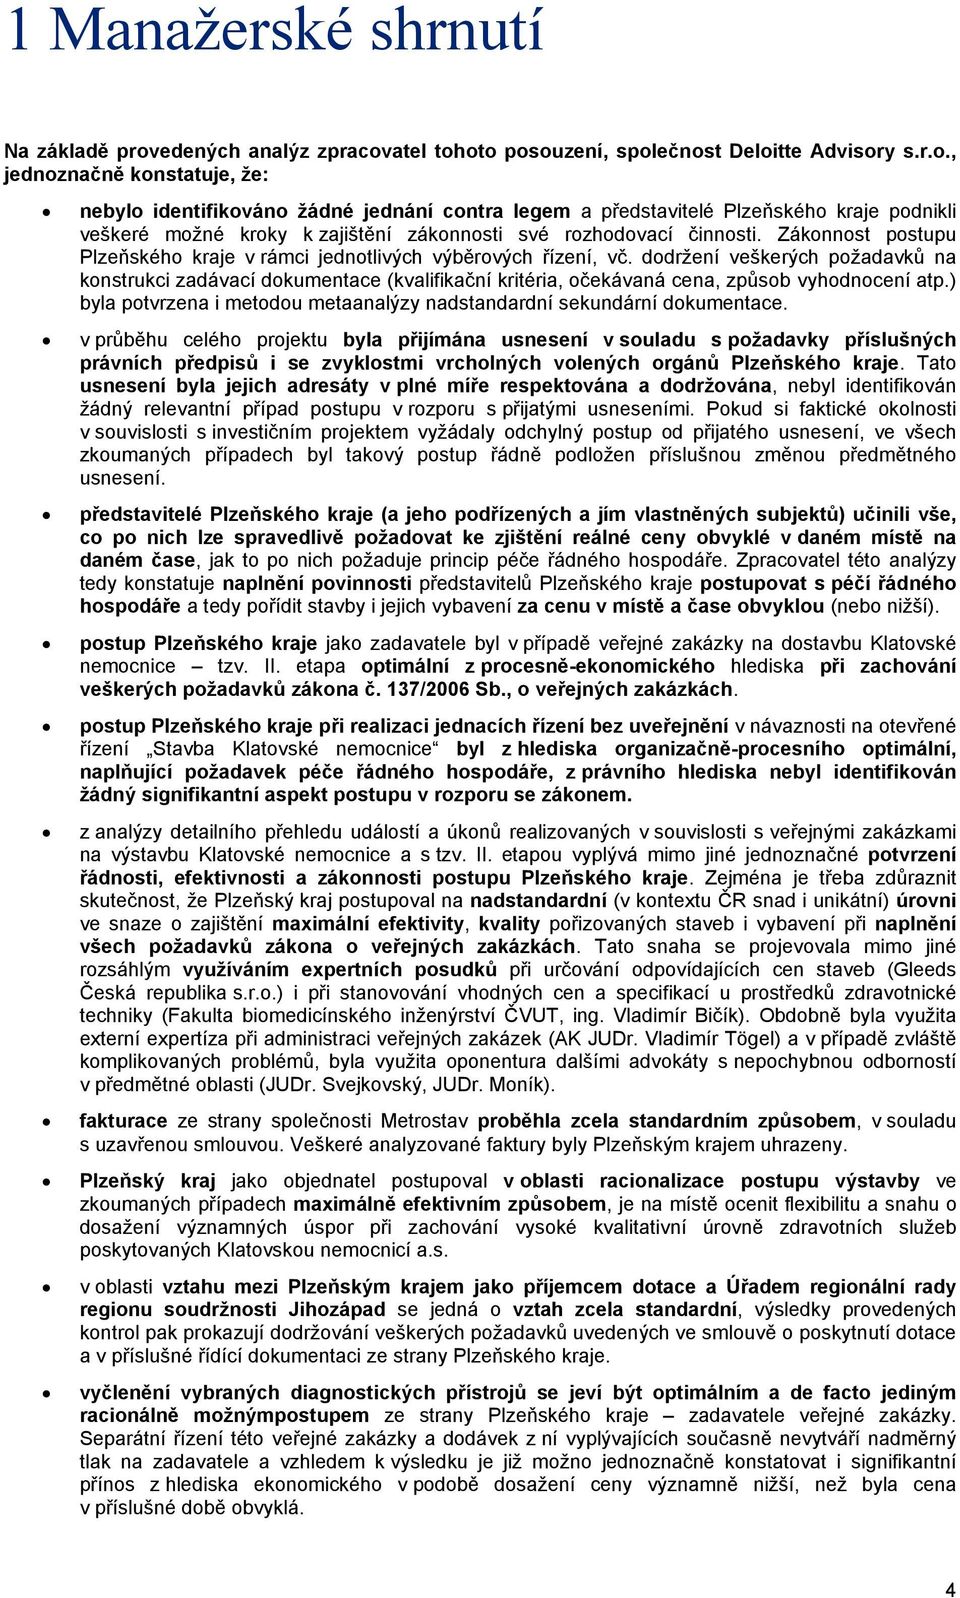 atel tohoto posouzení, společnost Deloitte Advisory s.r.o., jednoznačně konstatuje, že: nebylo identifikováno žádné jednání contra legem a představitelé Plzeňského kraje podnikli veškeré možné kroky k zajištění zákonnosti své rozhodovací činnosti.